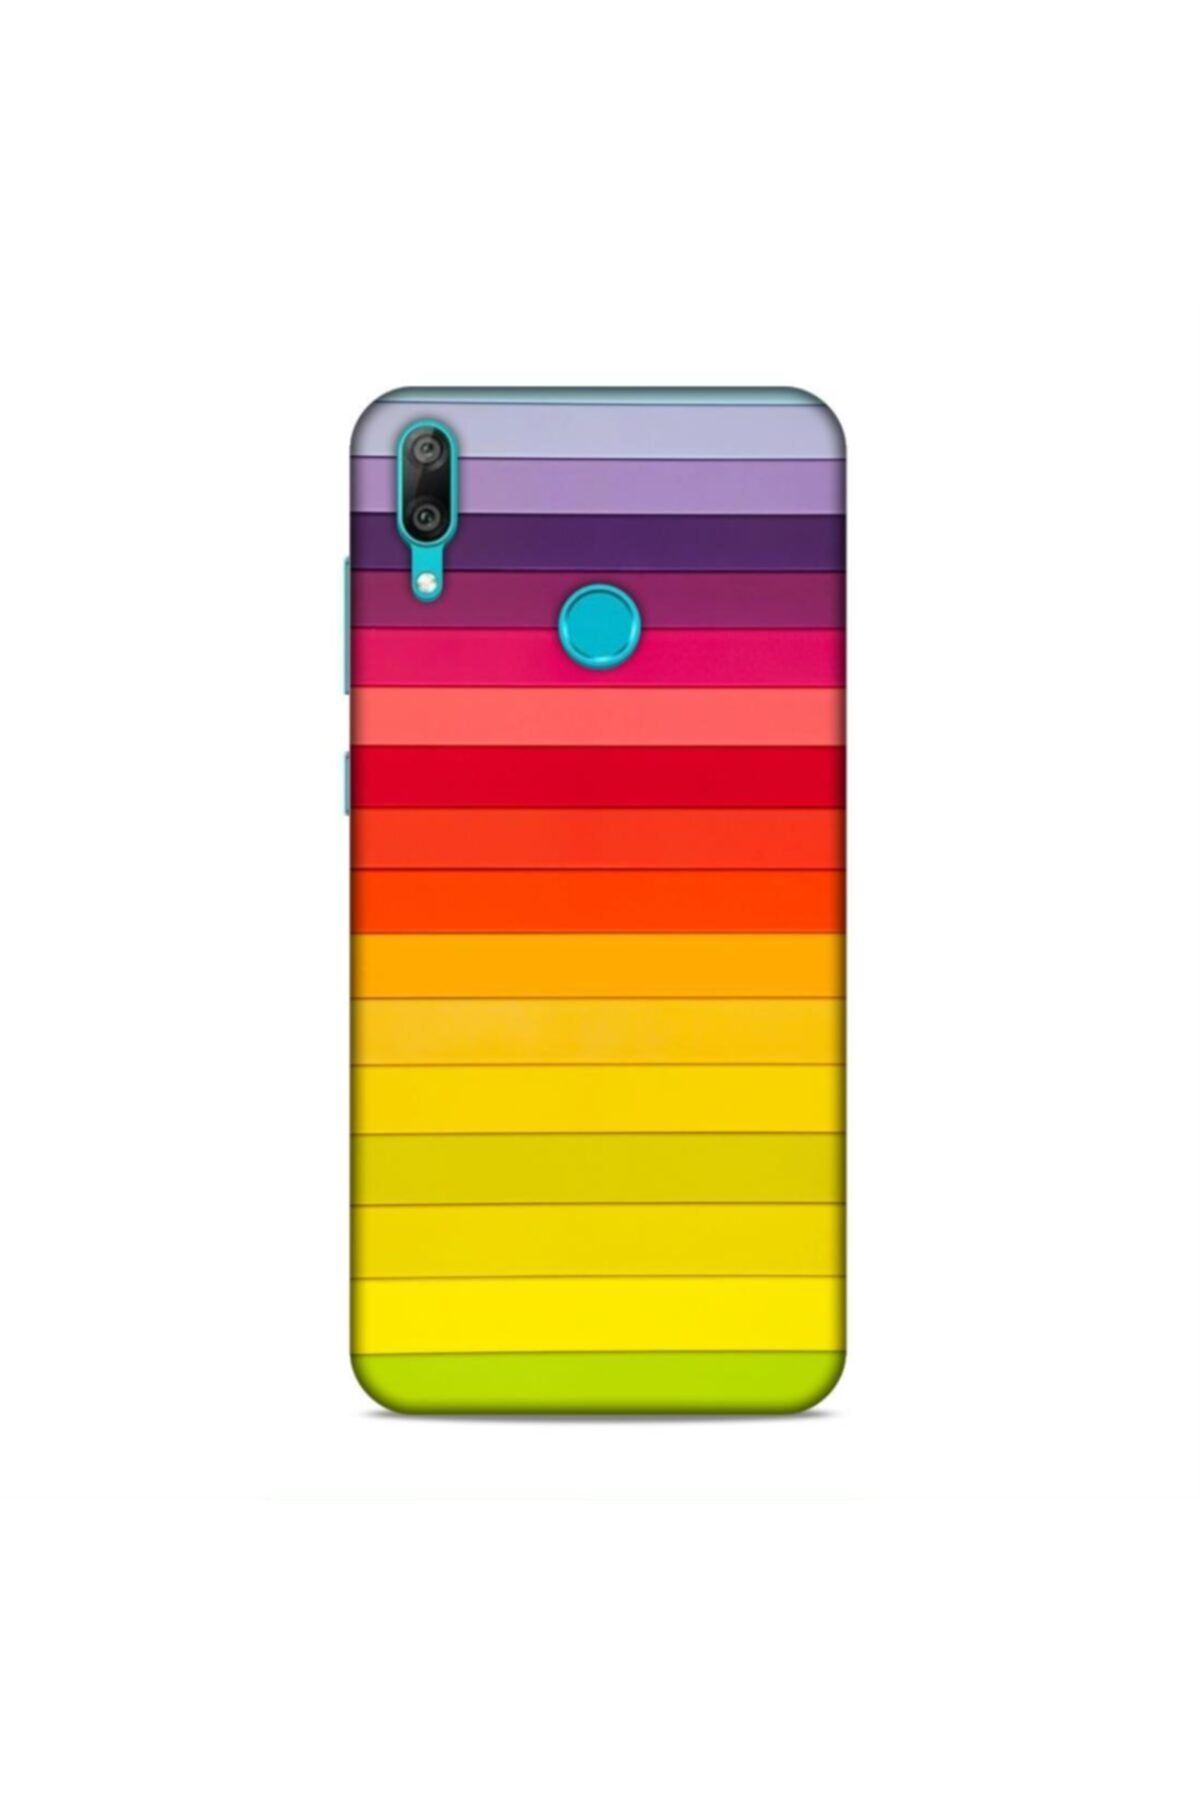 Pickcase Huawei Y7 Prime 2019 Kılıf Sarı Desenli Arka Kapak Renk Tonları